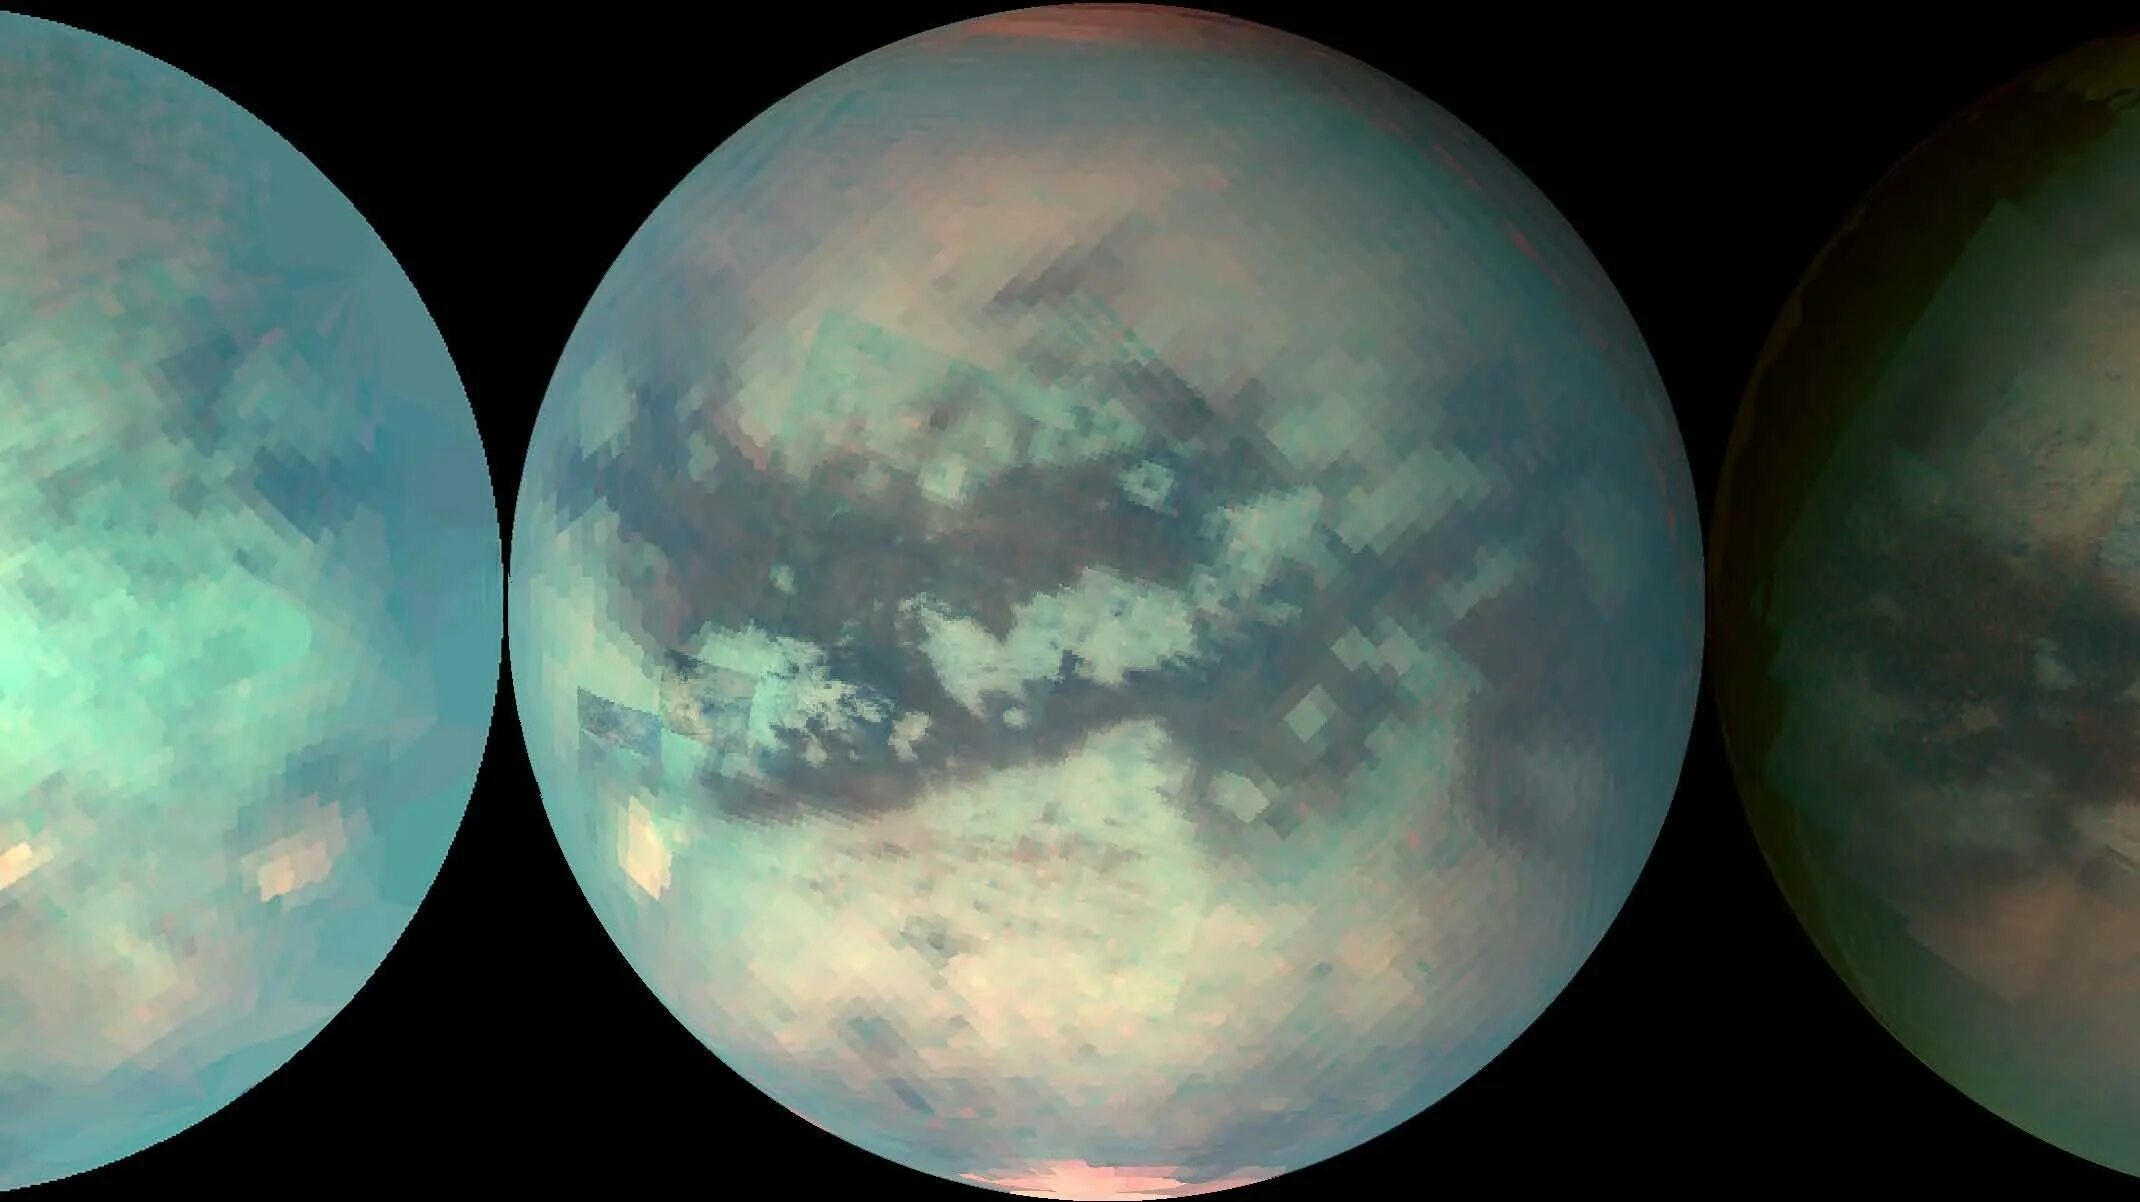 Титан Спутник Сатурна. Атмосфера титана спутника Сатурна. Титан Спутник спутники Сатурна. Титан Спутник фото. Титан небесный свод какой